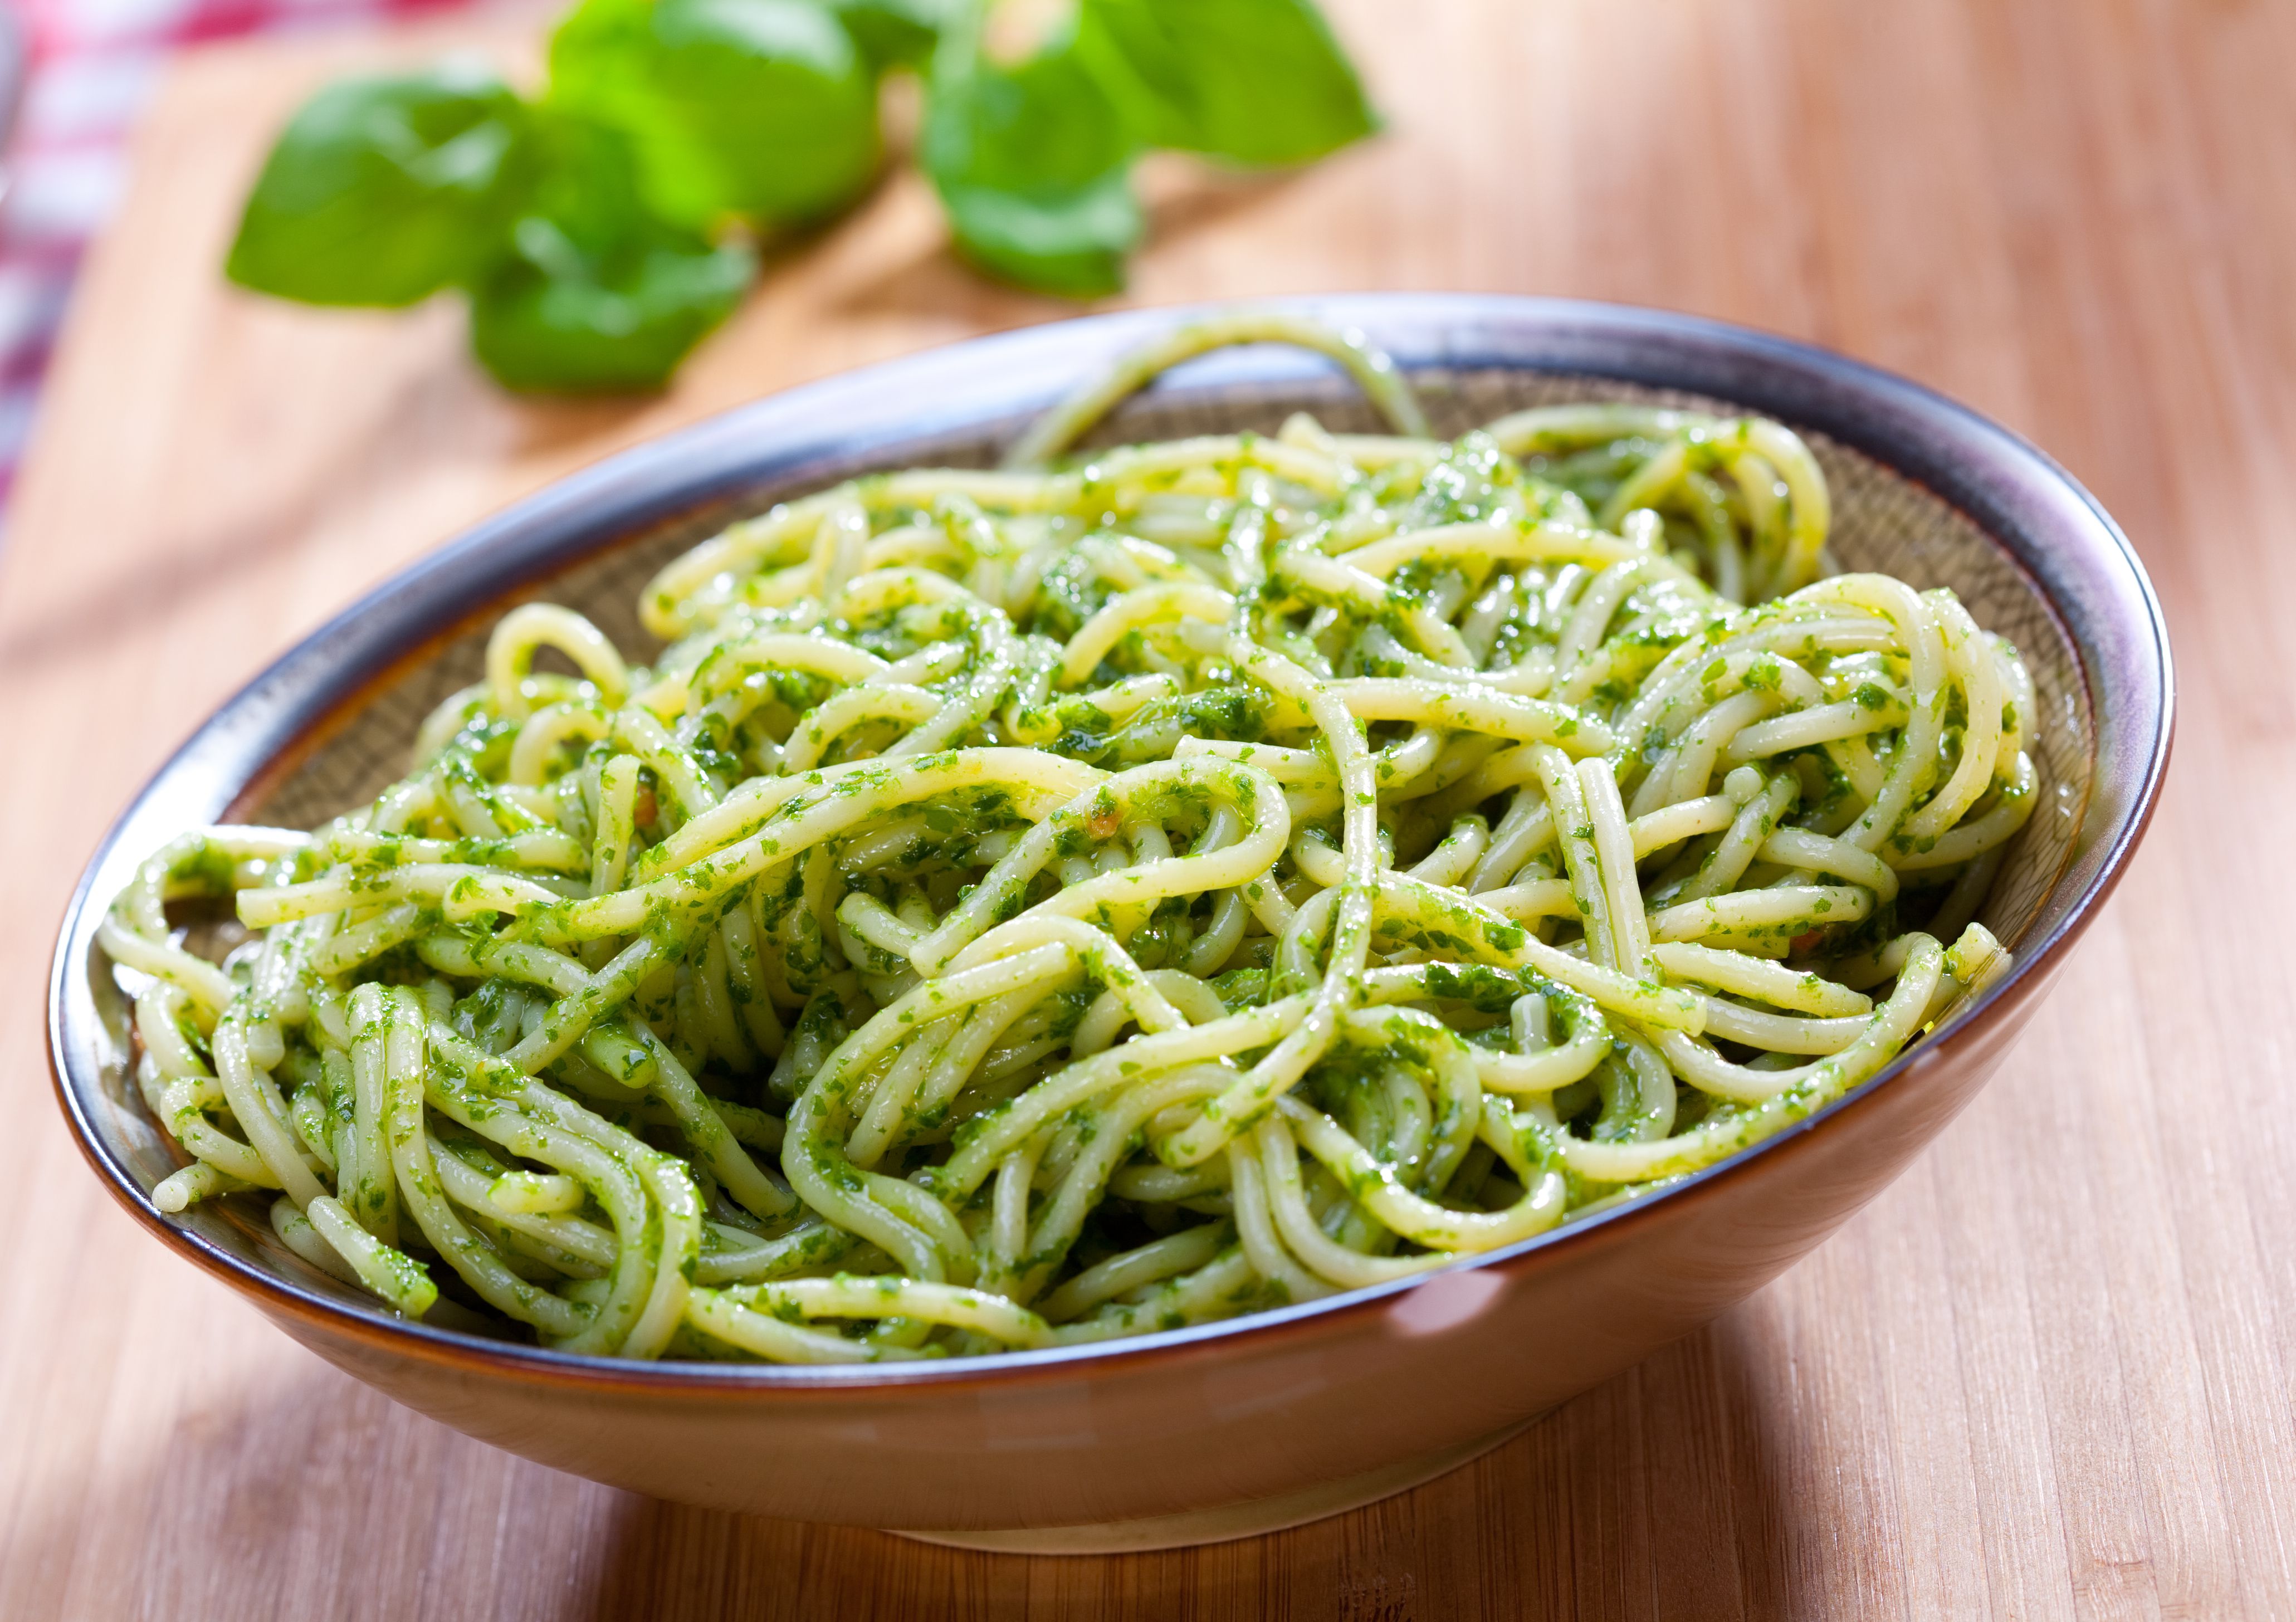 Spinach Pesto Sauce With Spaghetti Recipe